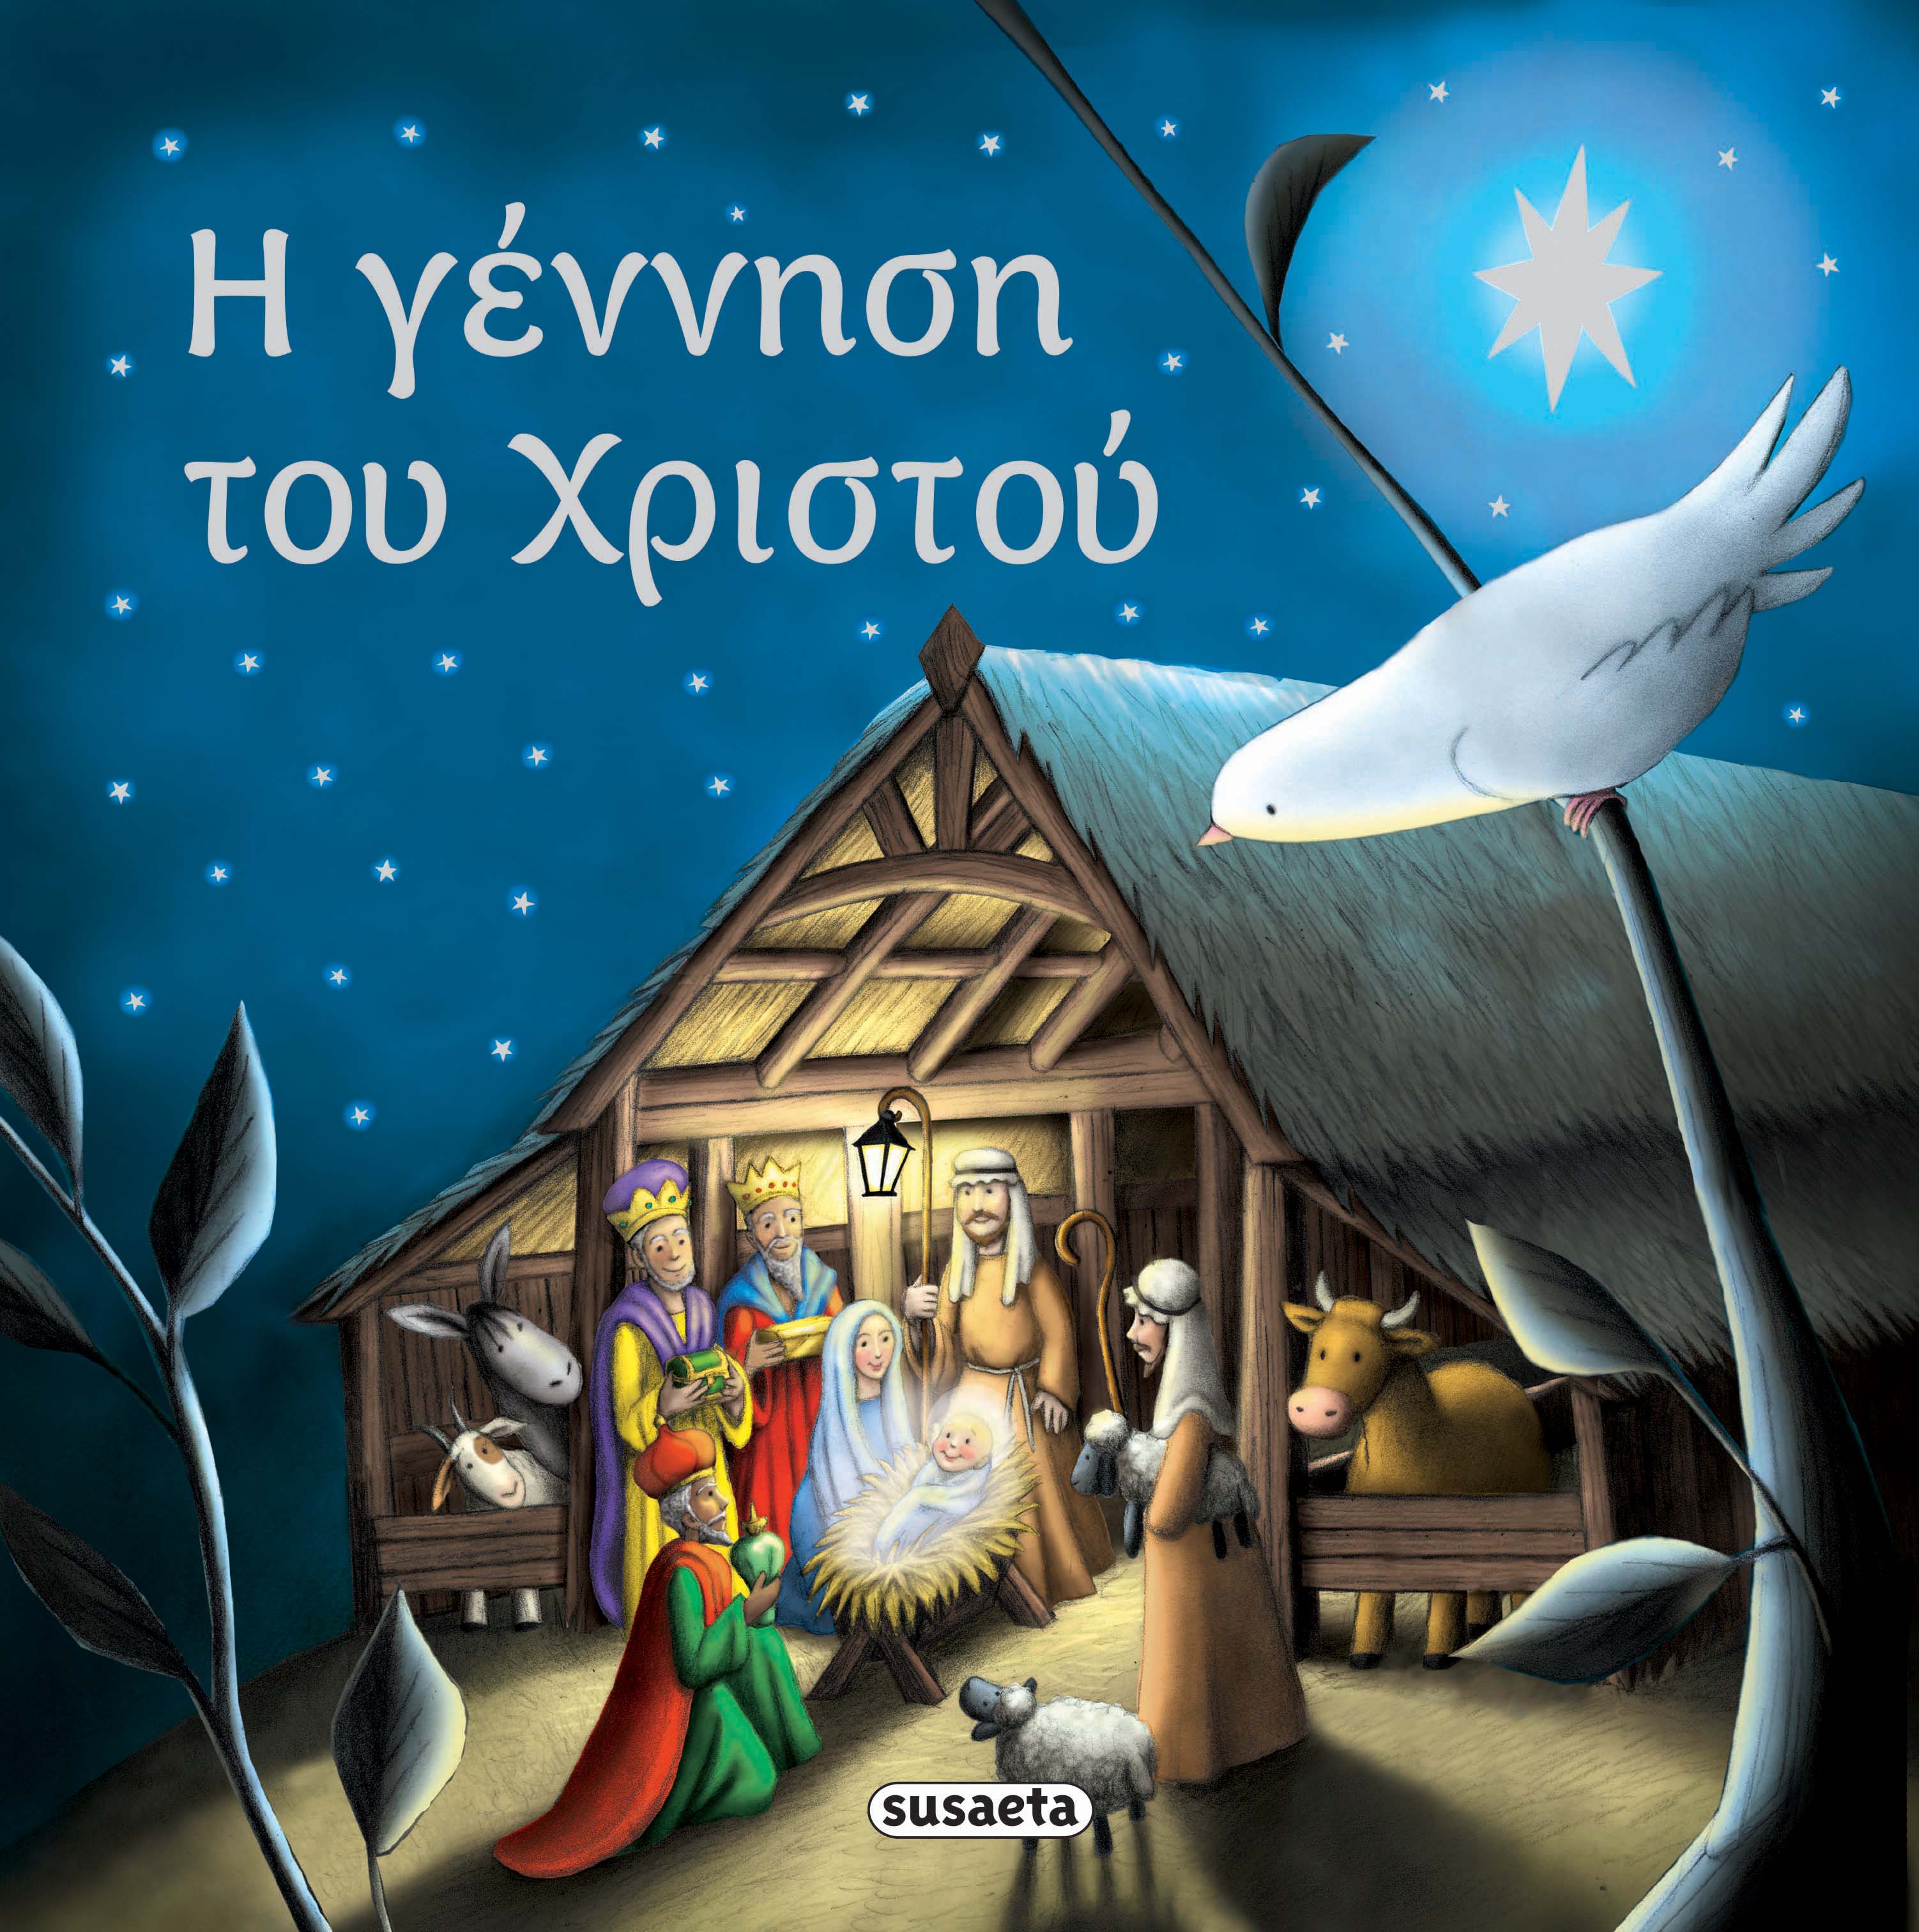 Χριστουγεννιάτικα βιβλία-&gt;Η γέννηση του Χριστού - www.susaeta.gr